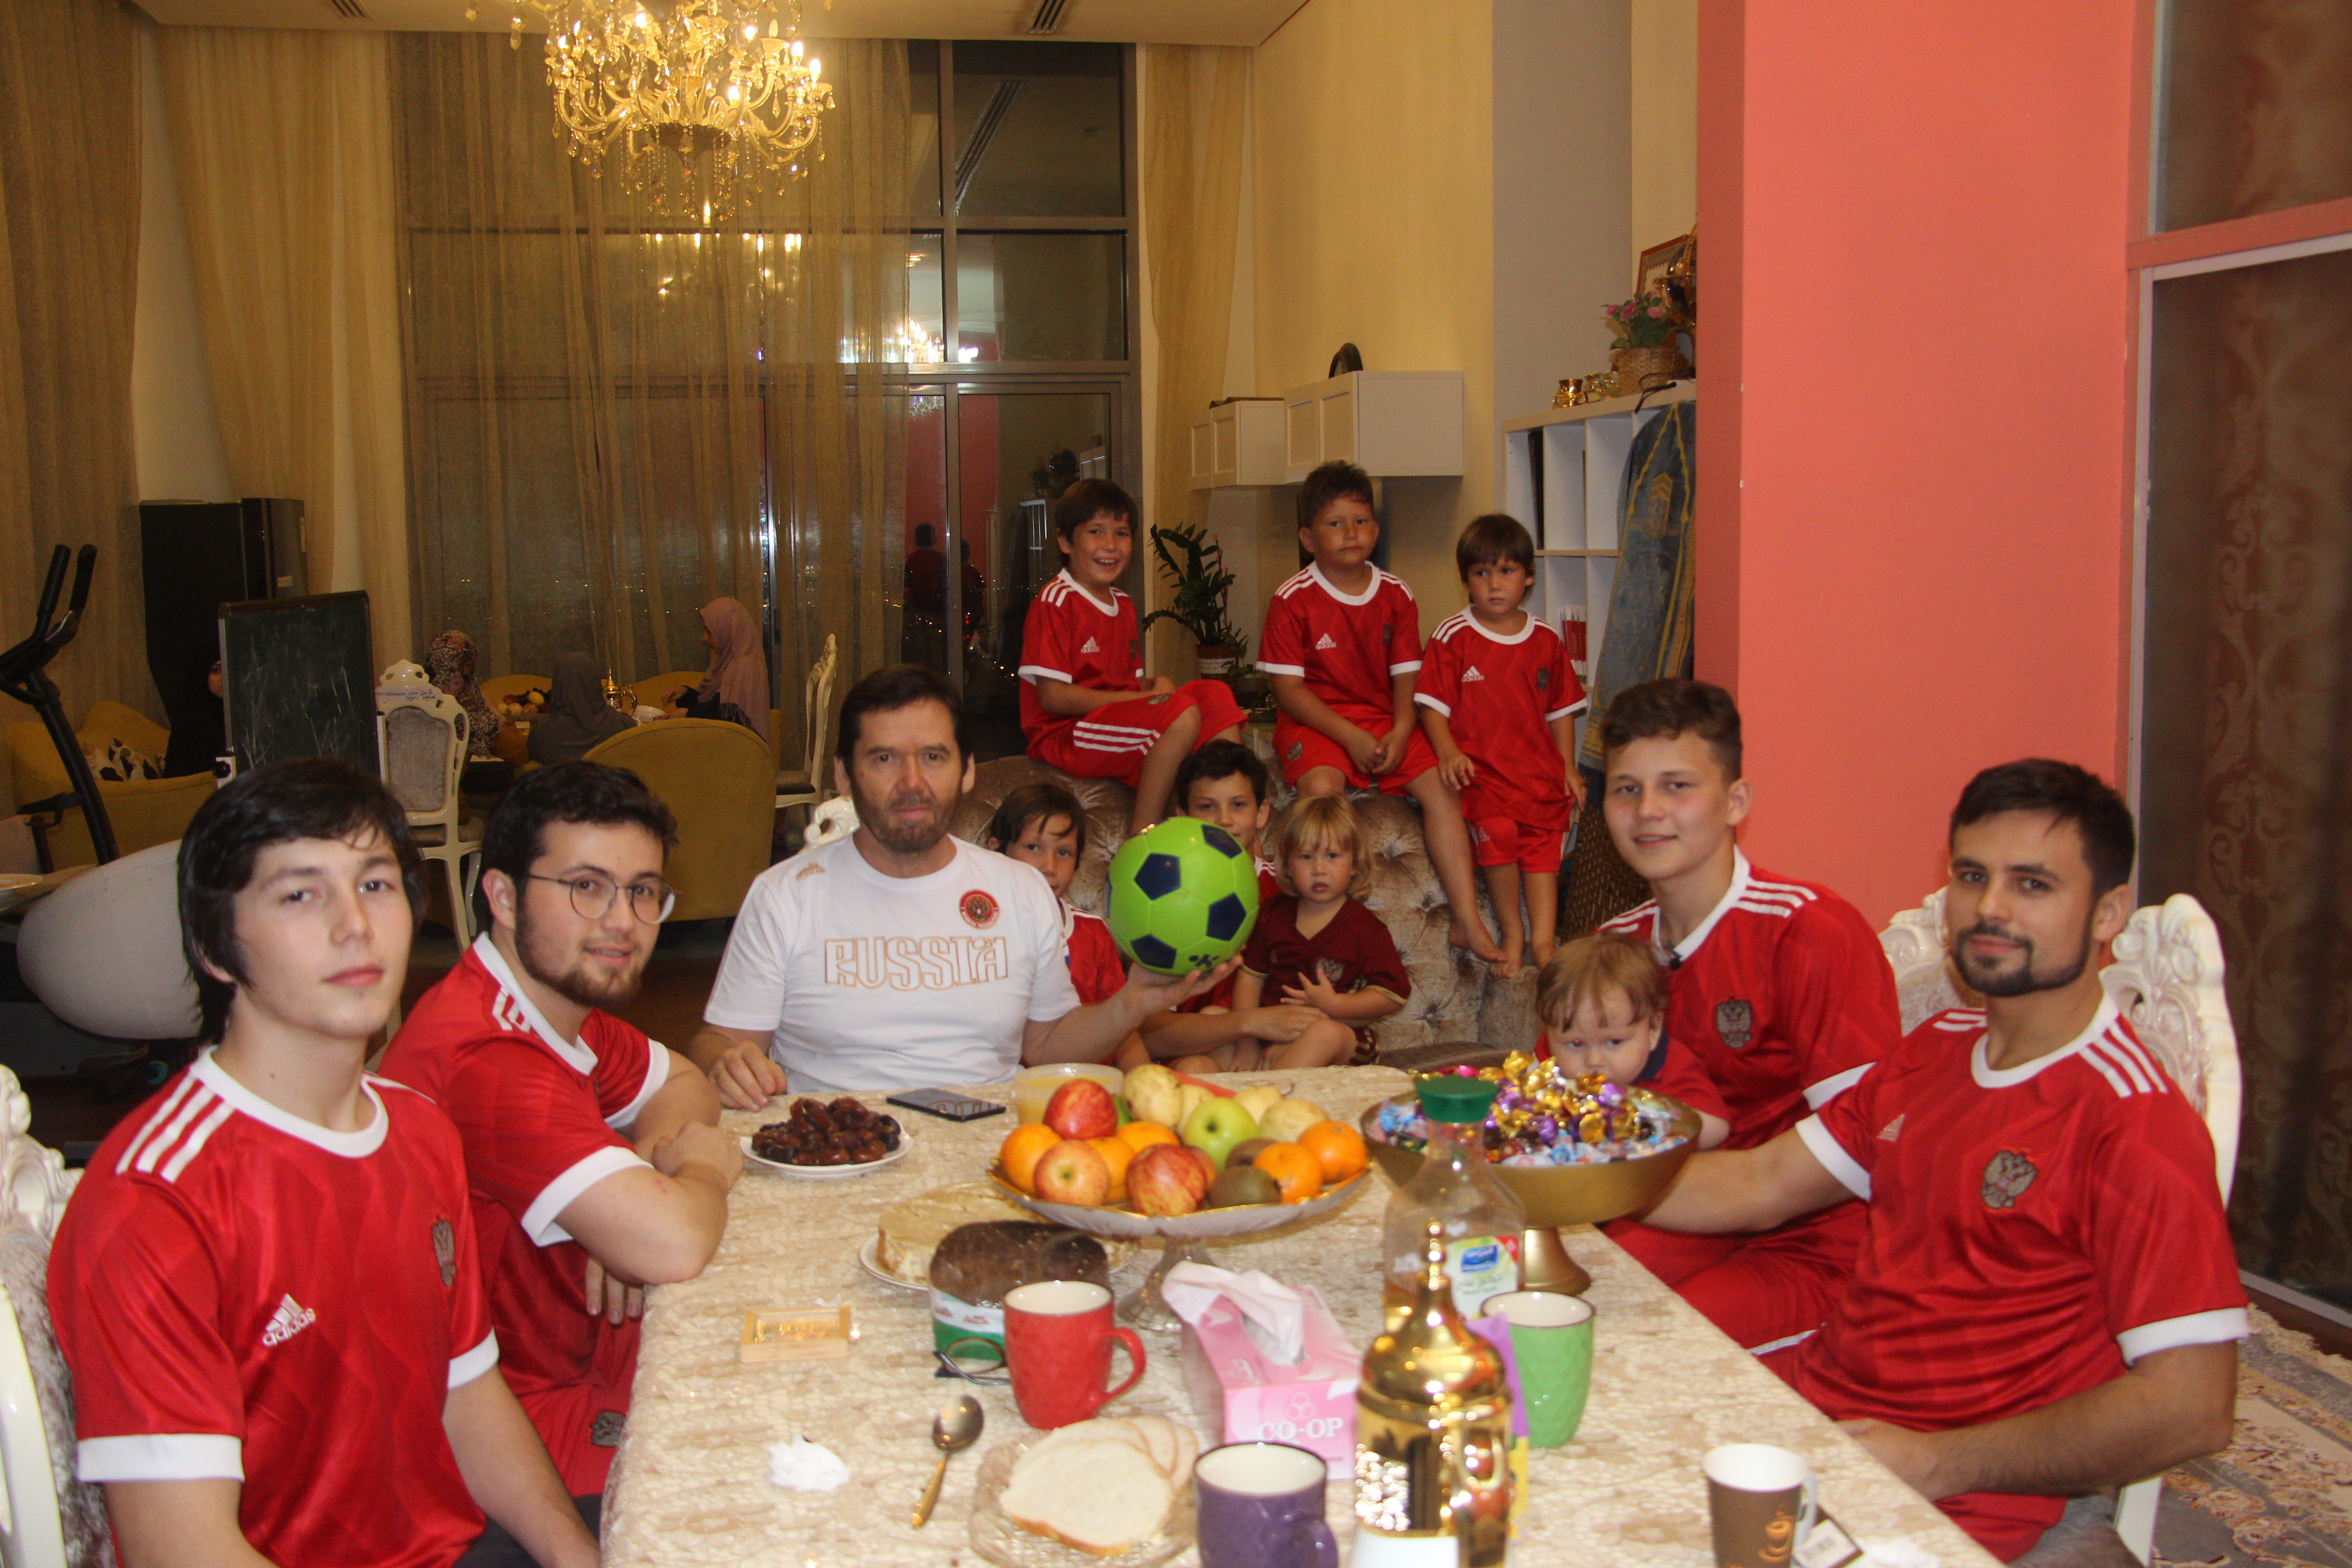 Отец футбольной команды из 11 детей о большом успехе сборной России на Чемпионате мира